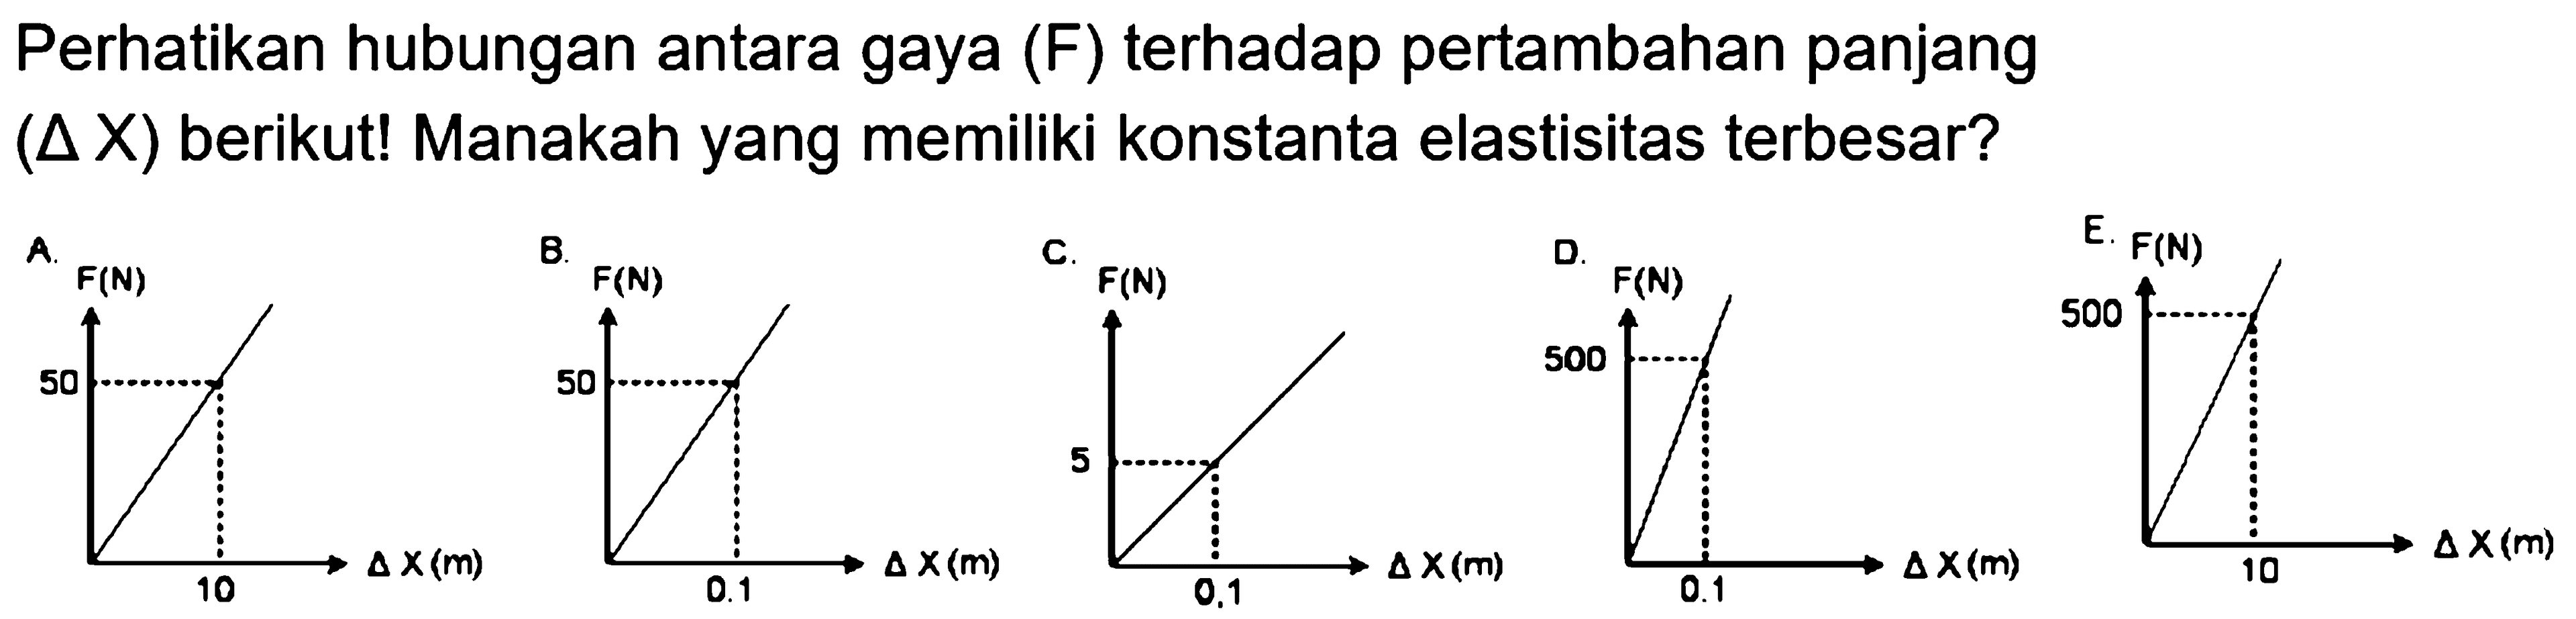 Perhatikan hubungan antara gaya (F) terhadap pertambahan panjang (segitiga X) berikut! Manakah yang memiliki konstanta elastisitas terbesar? 